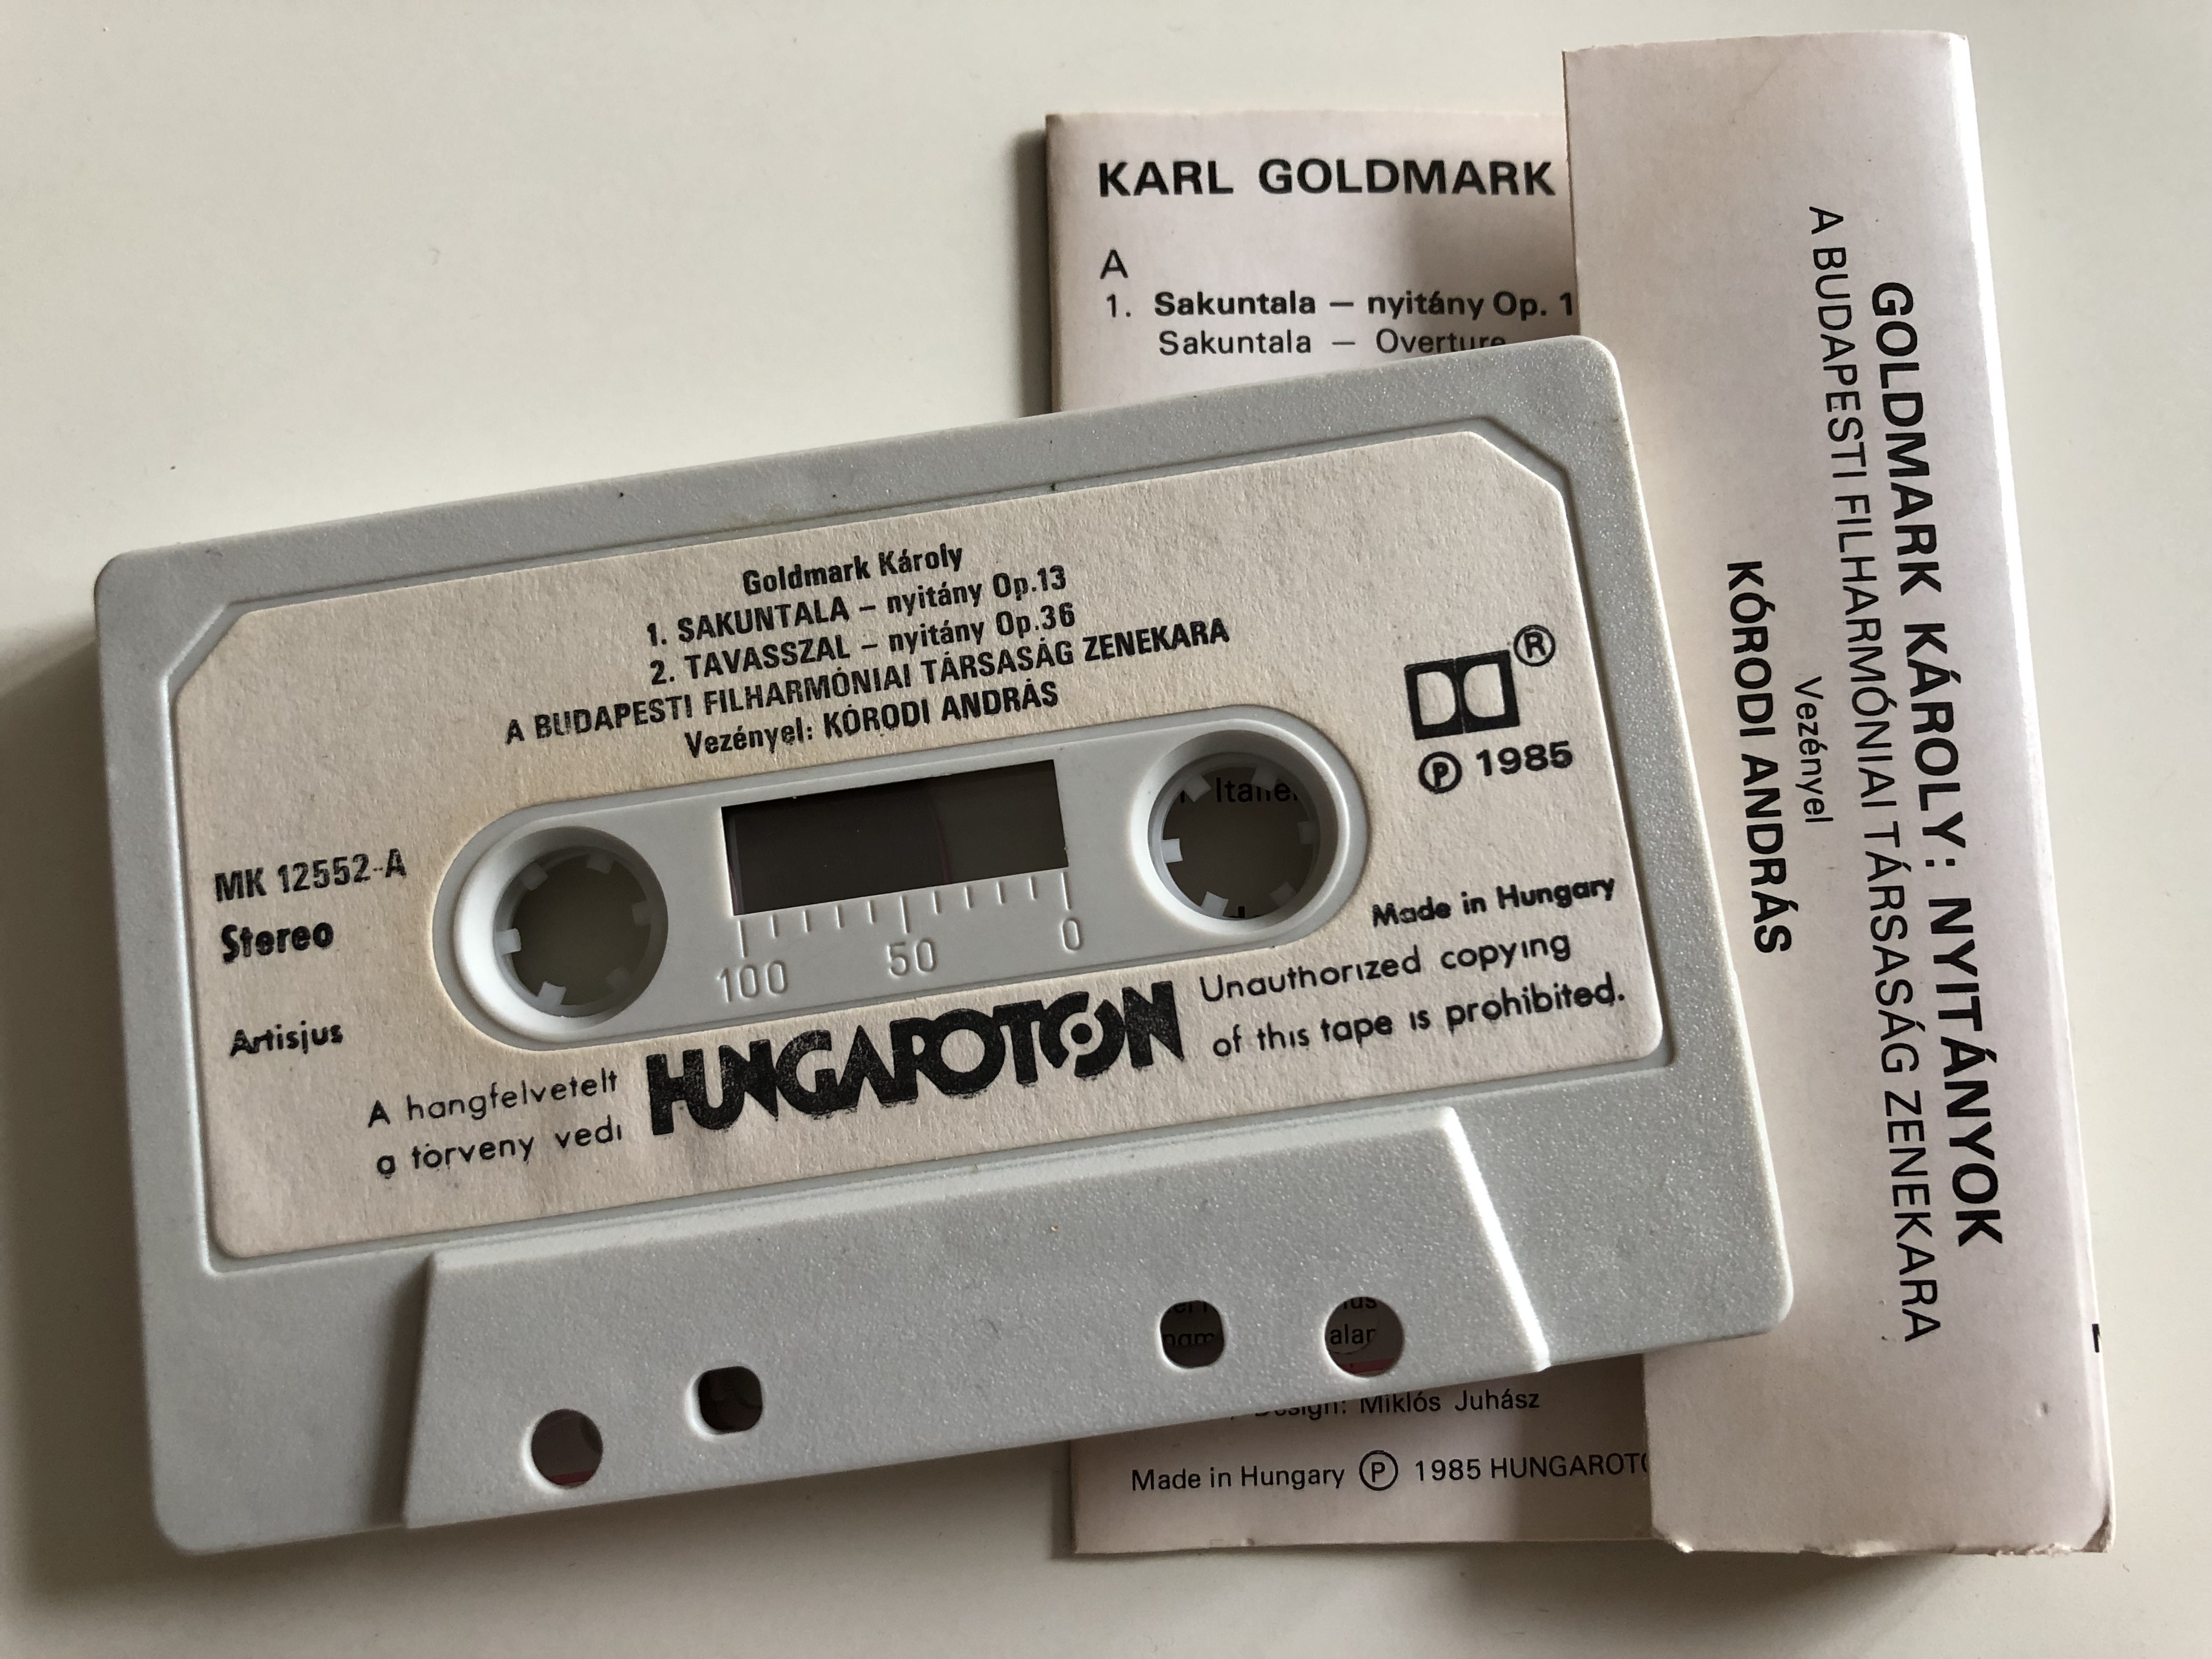 karl-goldmark-overtures-sakuntala-im-fr-hling-prometheus-in-italien-budapest-philharmonic-orchestra-conducted-andr-s-k-rodi-hungaroton-cassette-stereo-mk-12552-3-.jpg